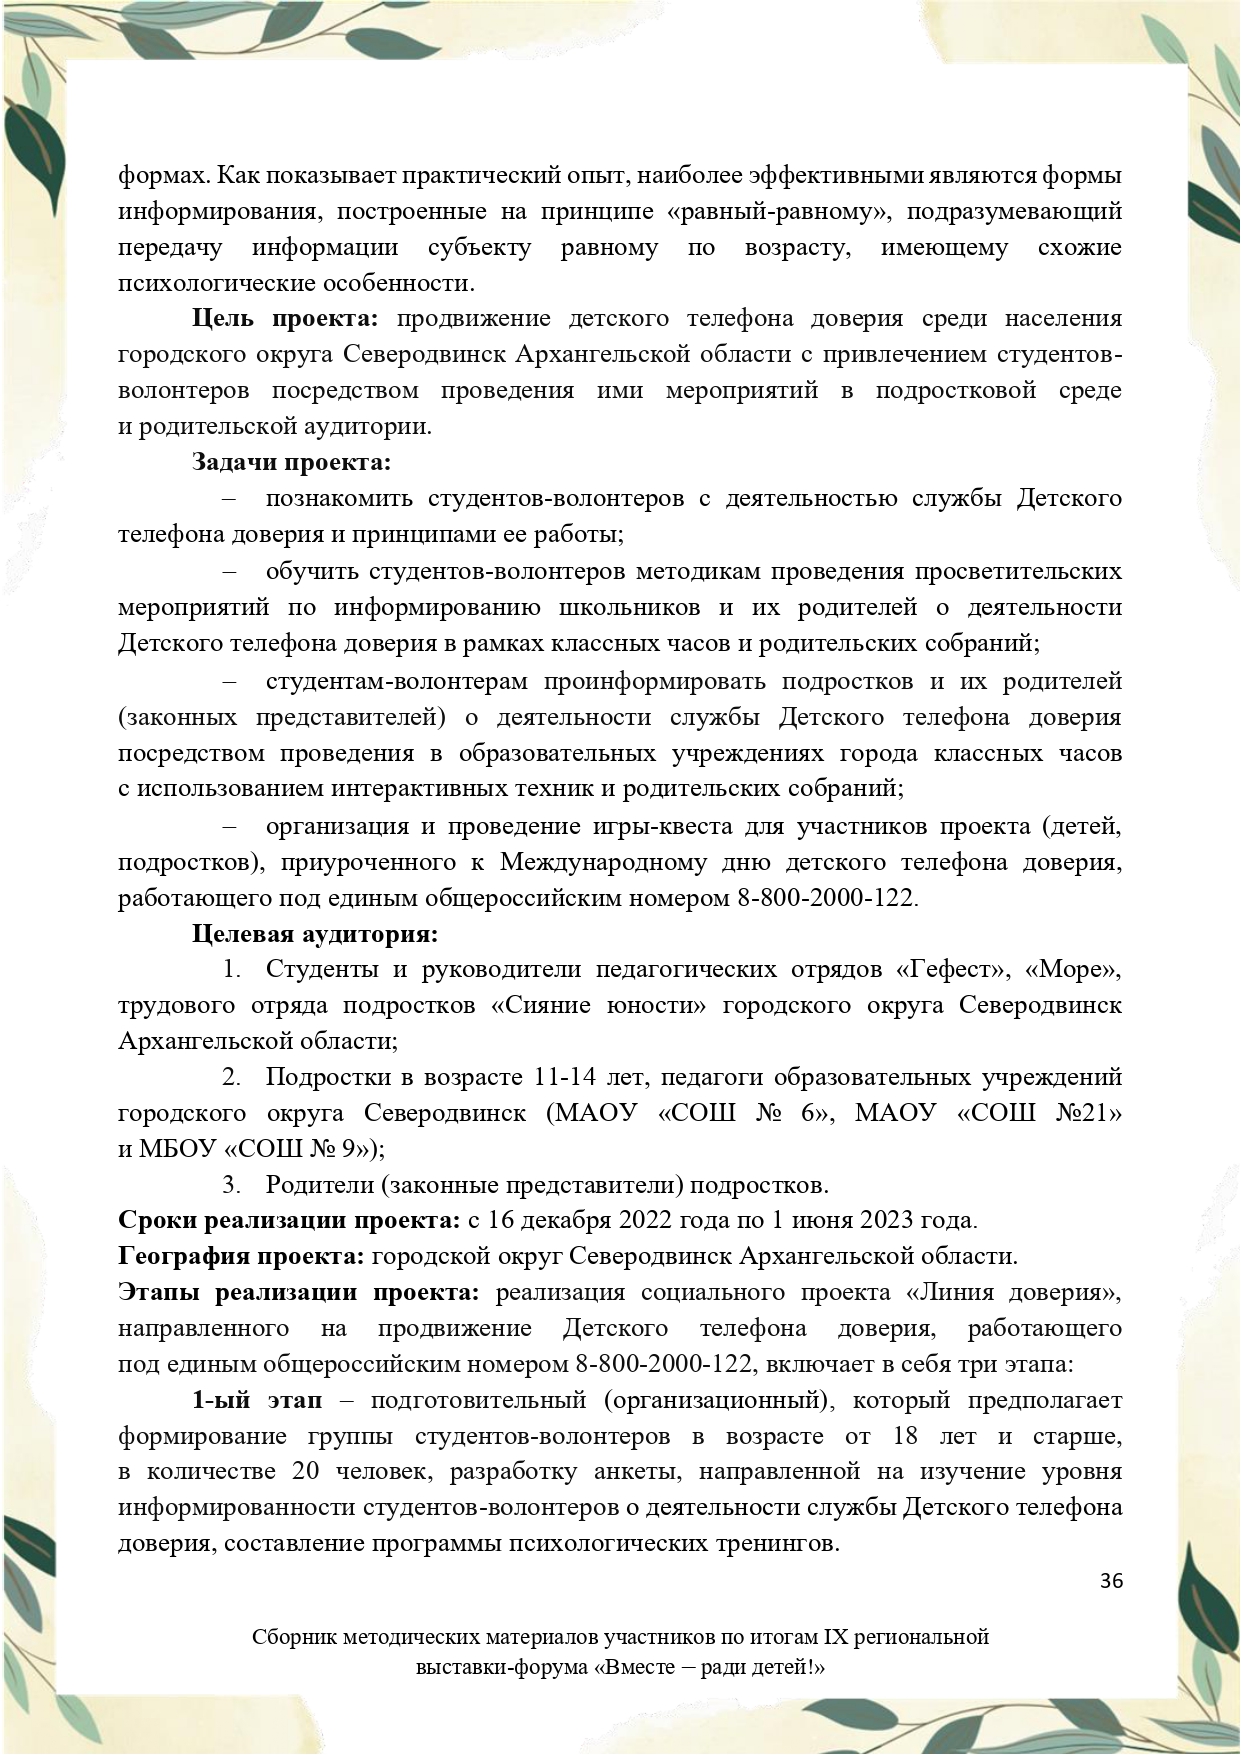 Sbornik_metodicheskikh_materialov_uchastnikov_IX_regionalnoy_vystavki-foruma_Vmeste__radi_detey_33__2023_page-0036